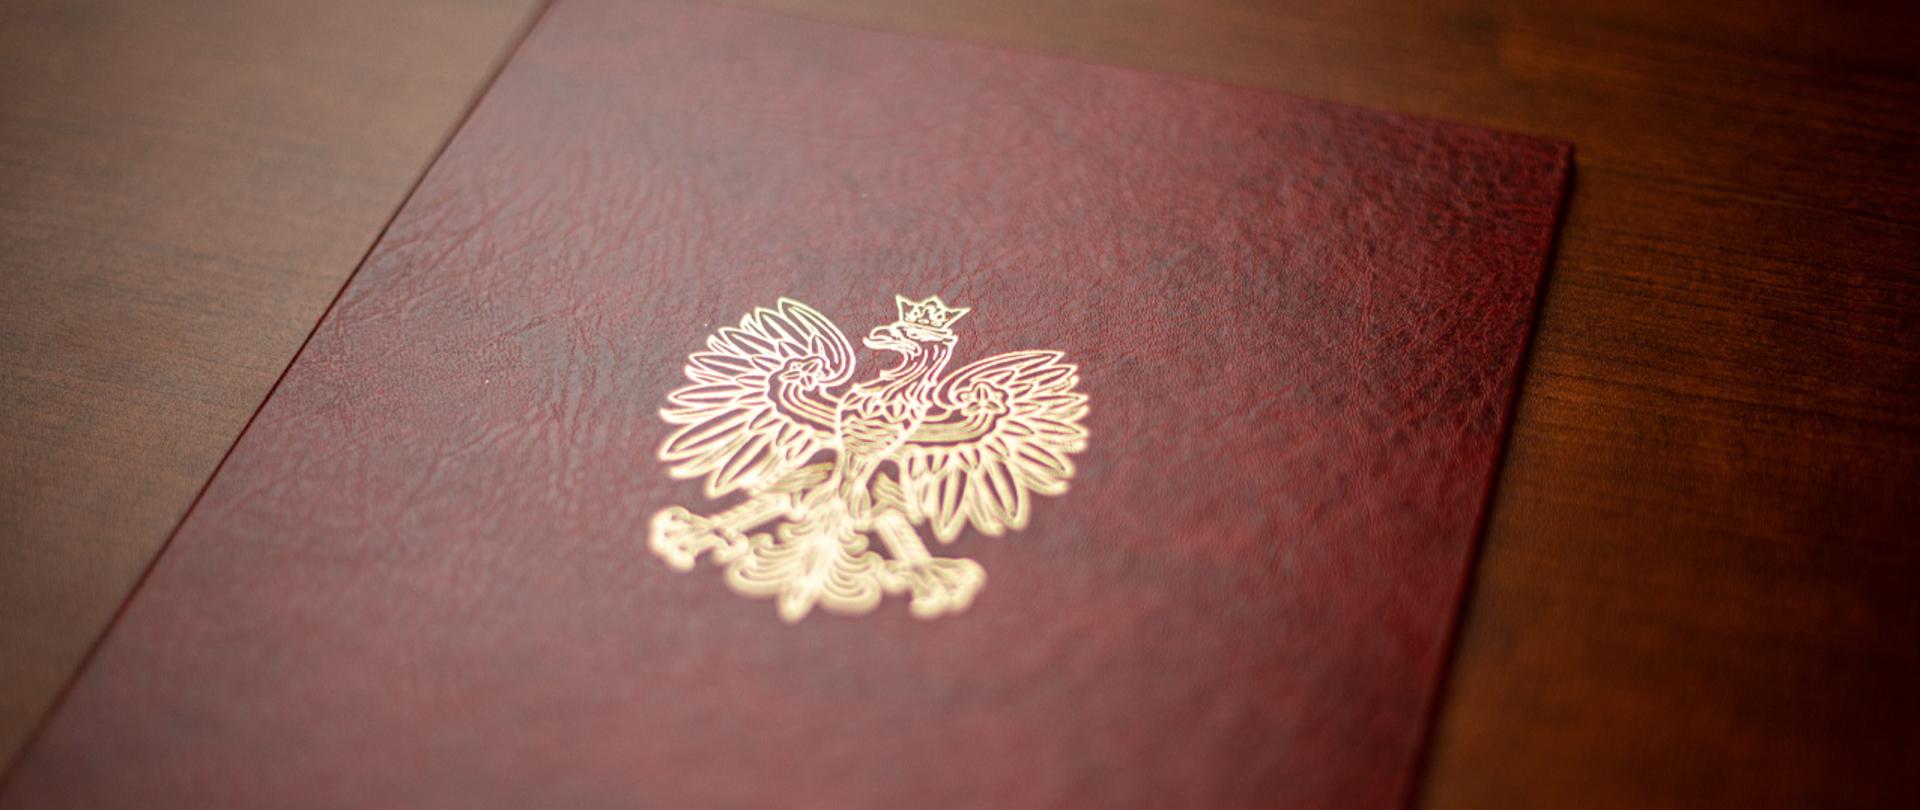 Na zdjęciu widać fragment twardej oprawy na dokumenty z wytłoczonym orłem z godła narodowego.